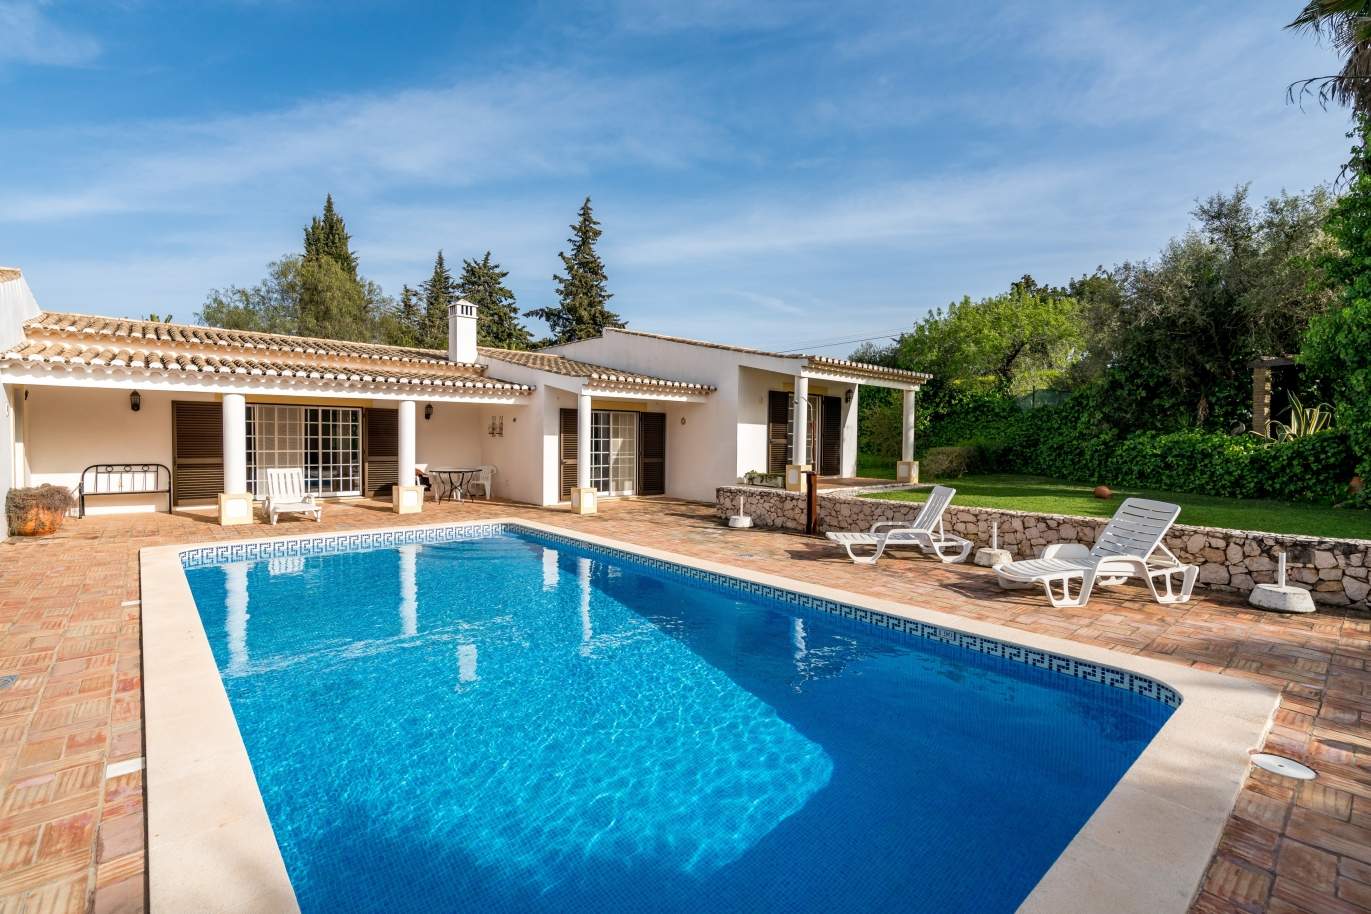 Casa en venta con piscina y jardín en alvor, Algarve, Portugal_135749